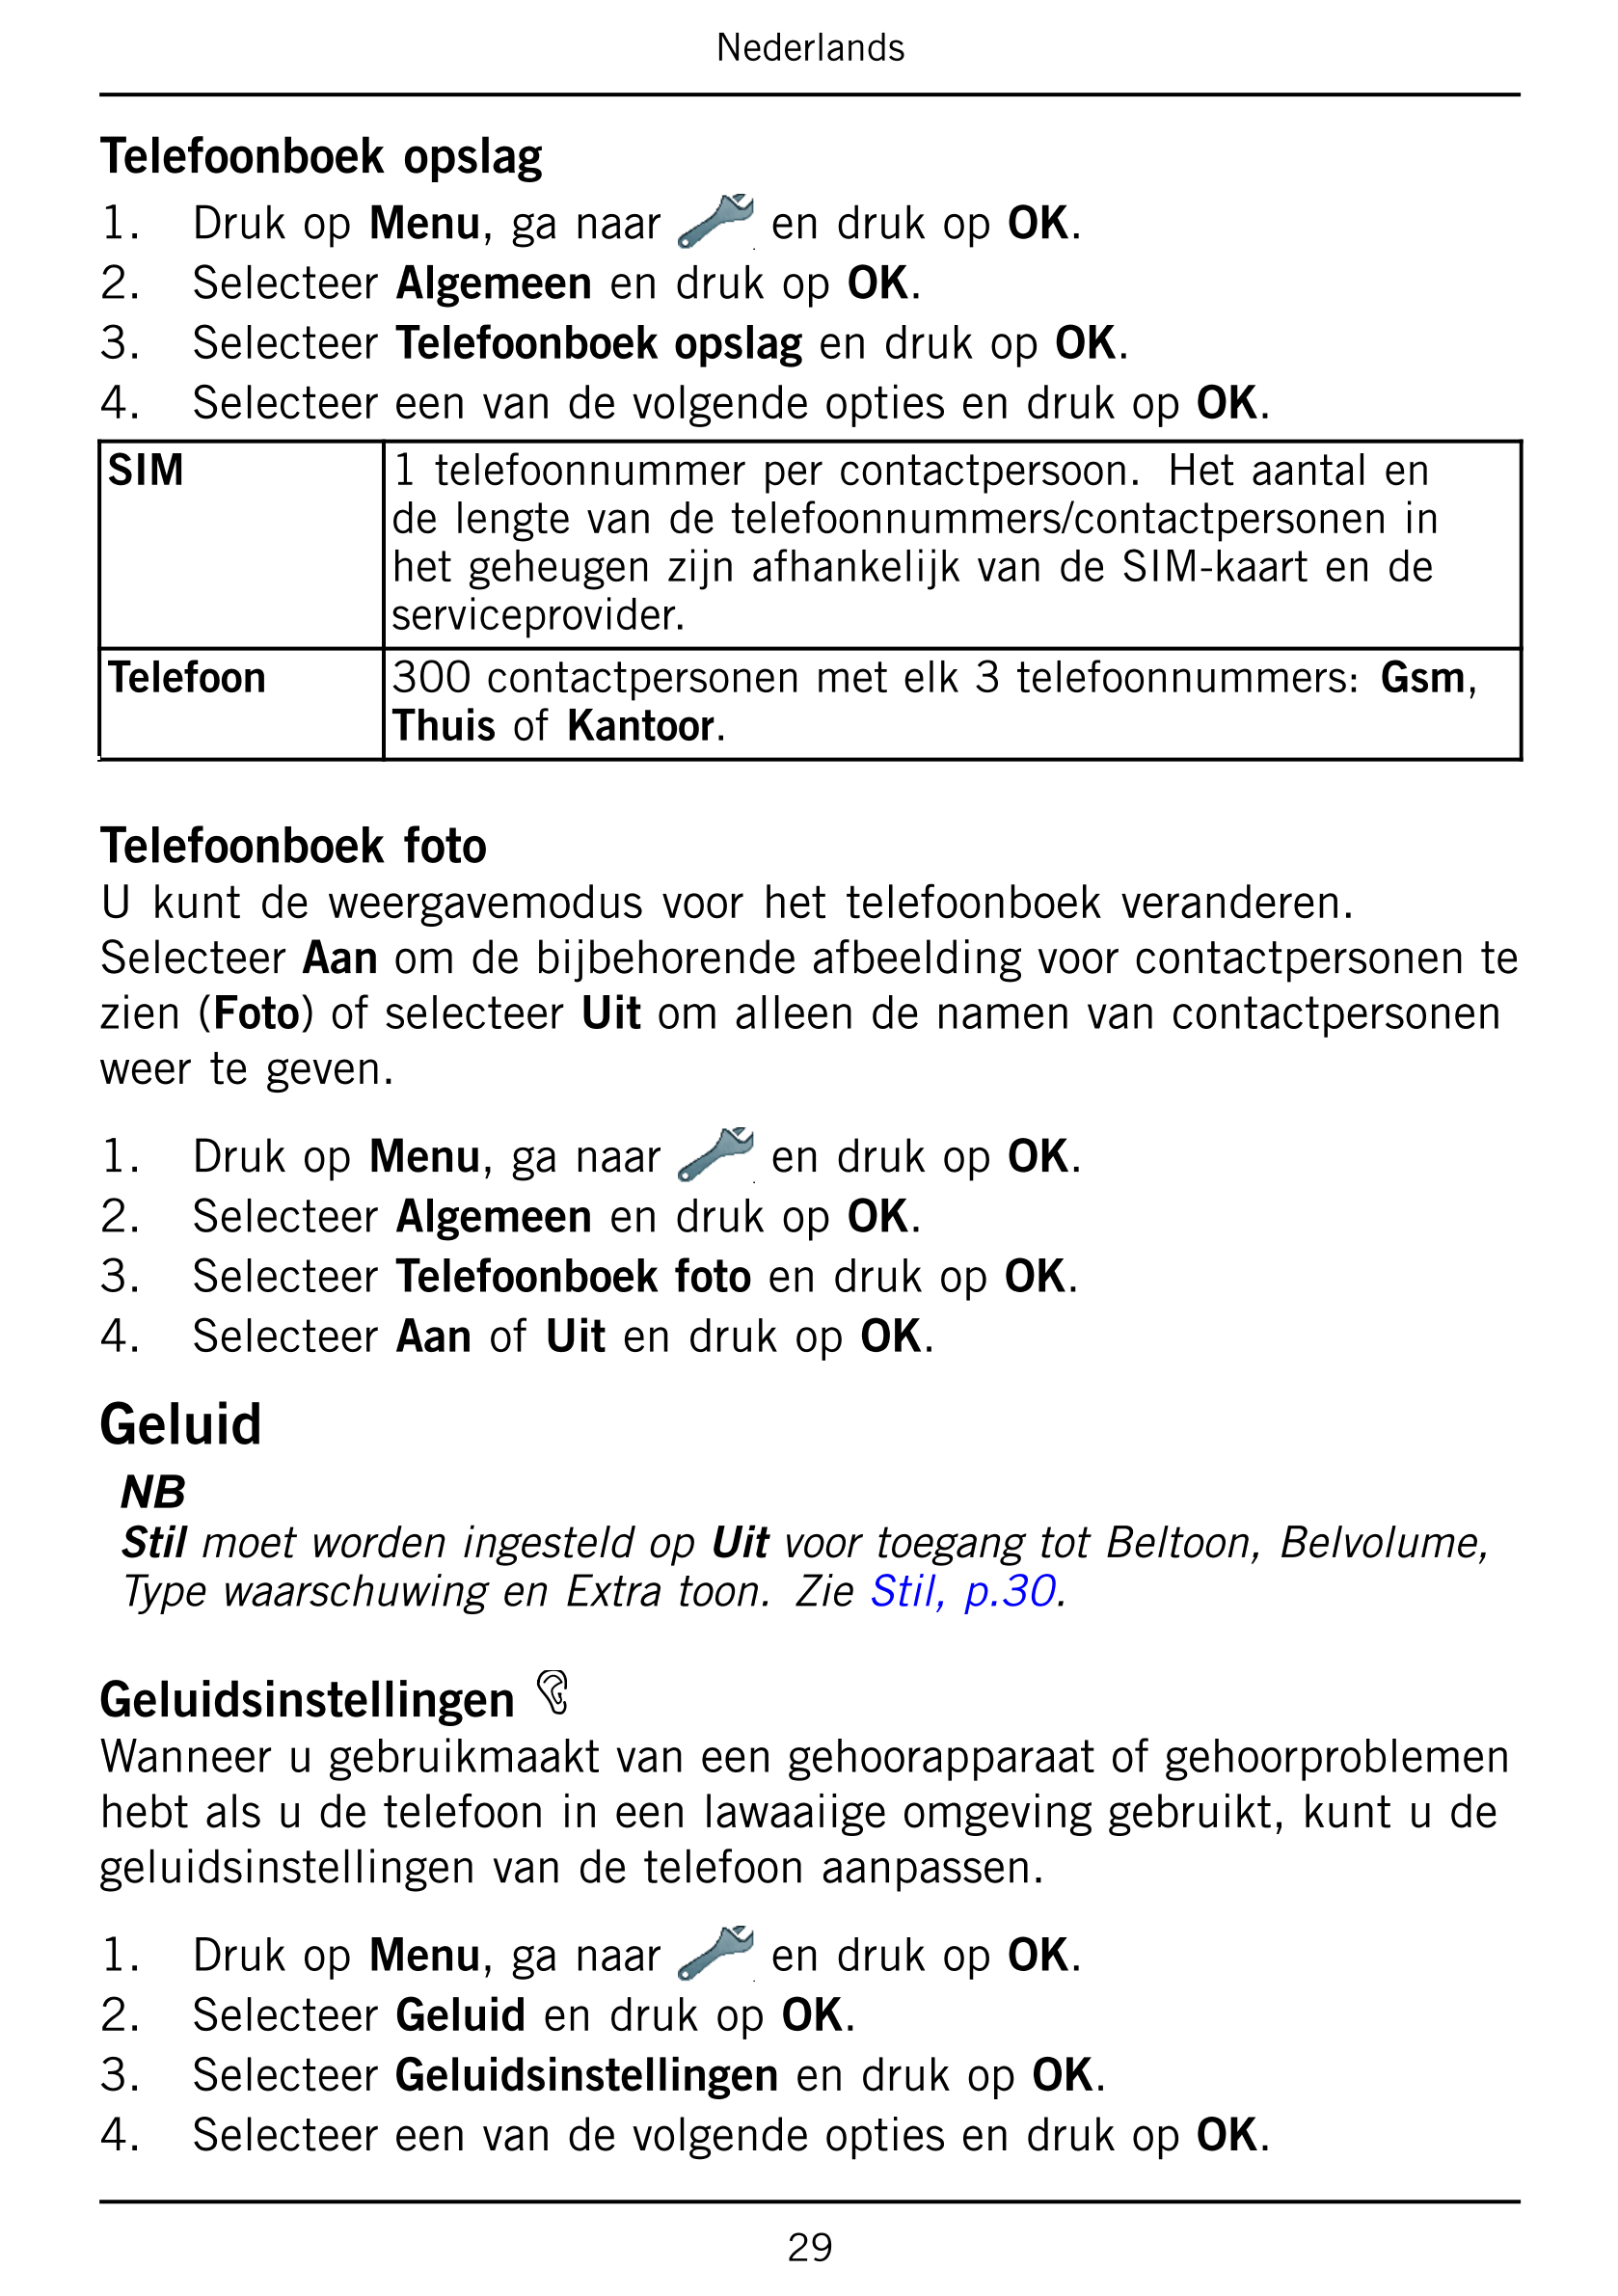 Nederlands
Telefoonboek opslag
1.     Druk op Menu, ga naar en druk op OK.
2.     Selecteer Algemeen en druk op OK.
3.     Selec